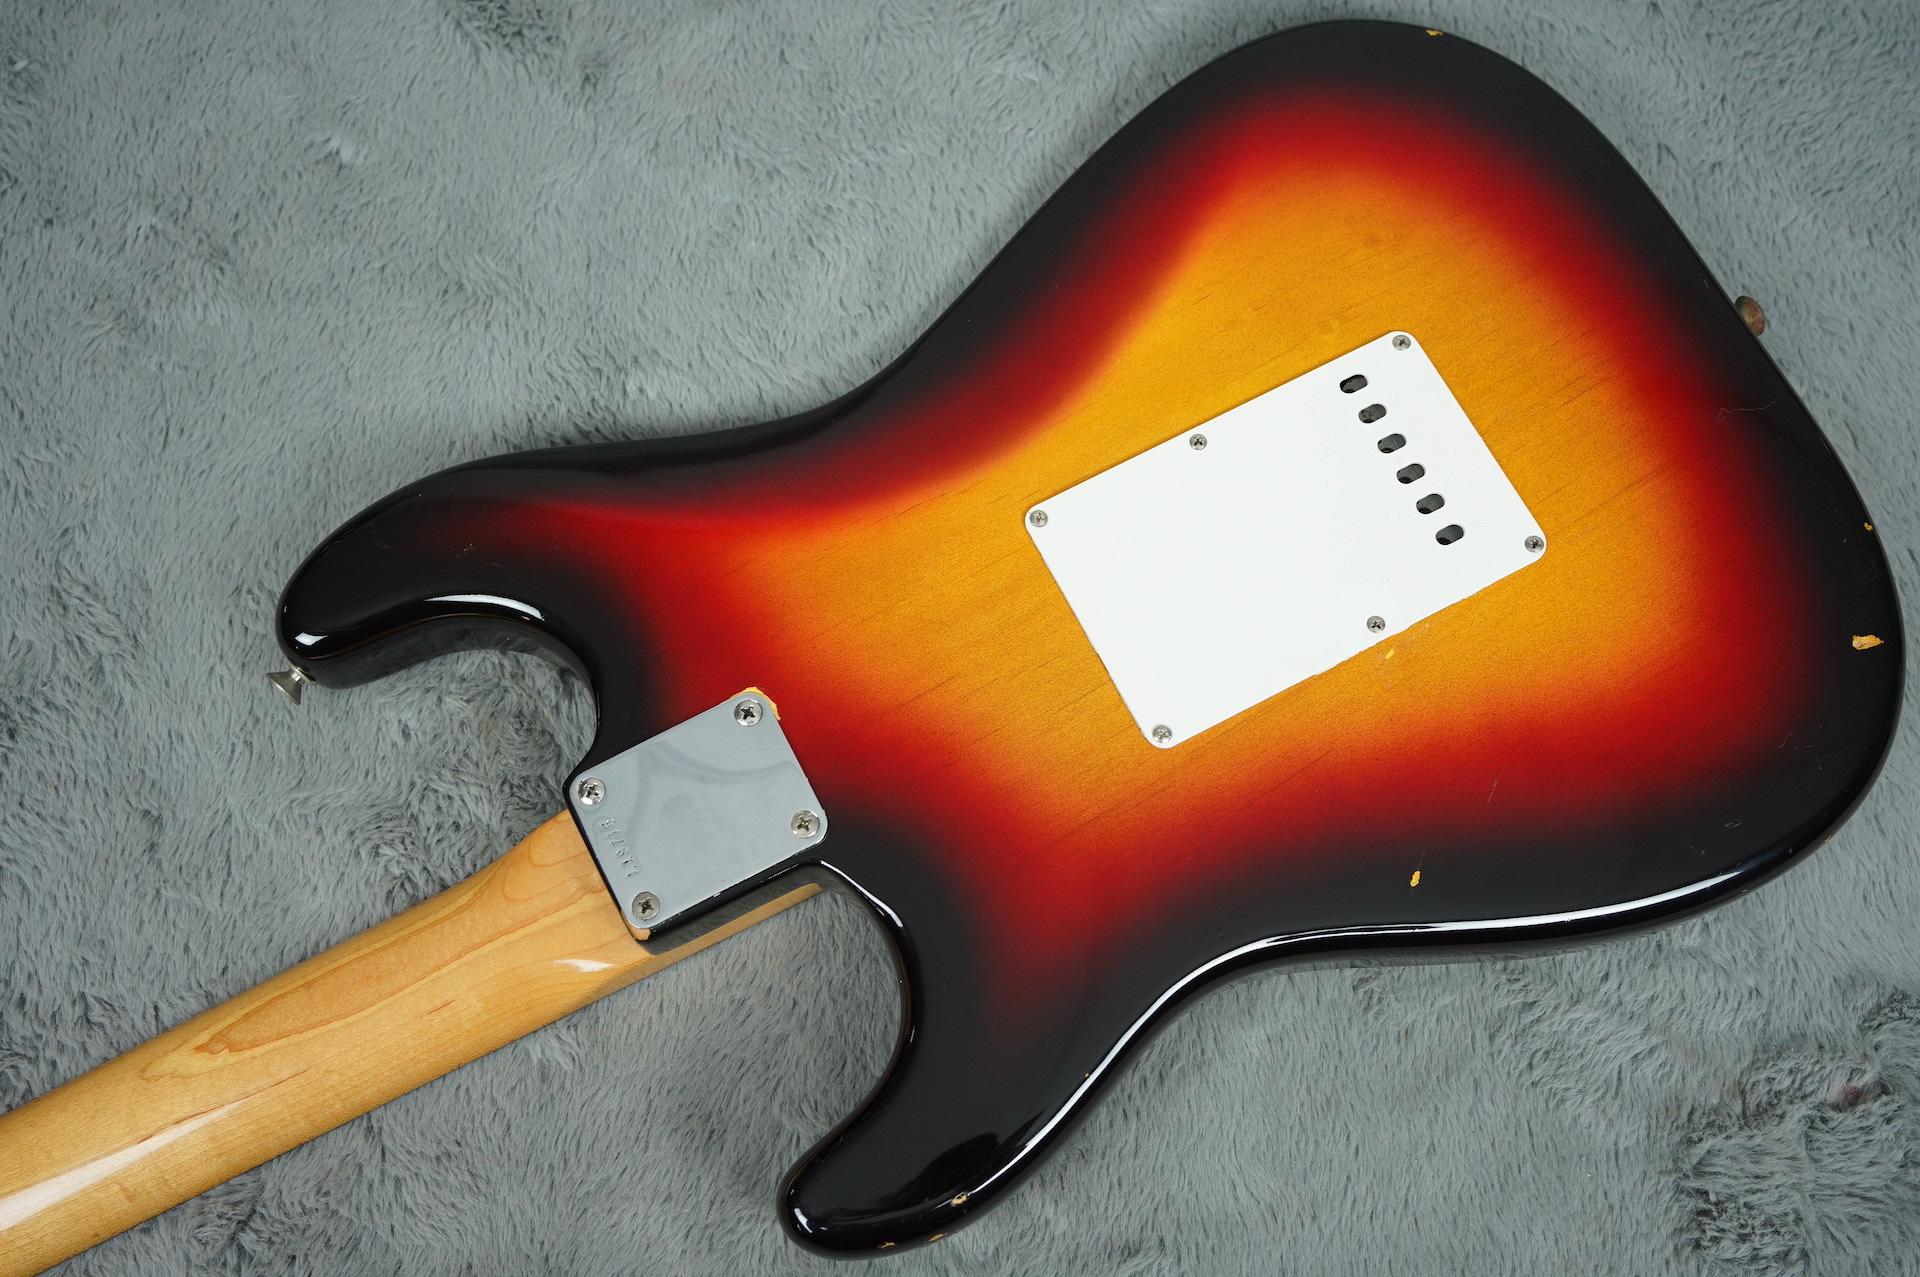 1963 Fender Stratocaster near MINT